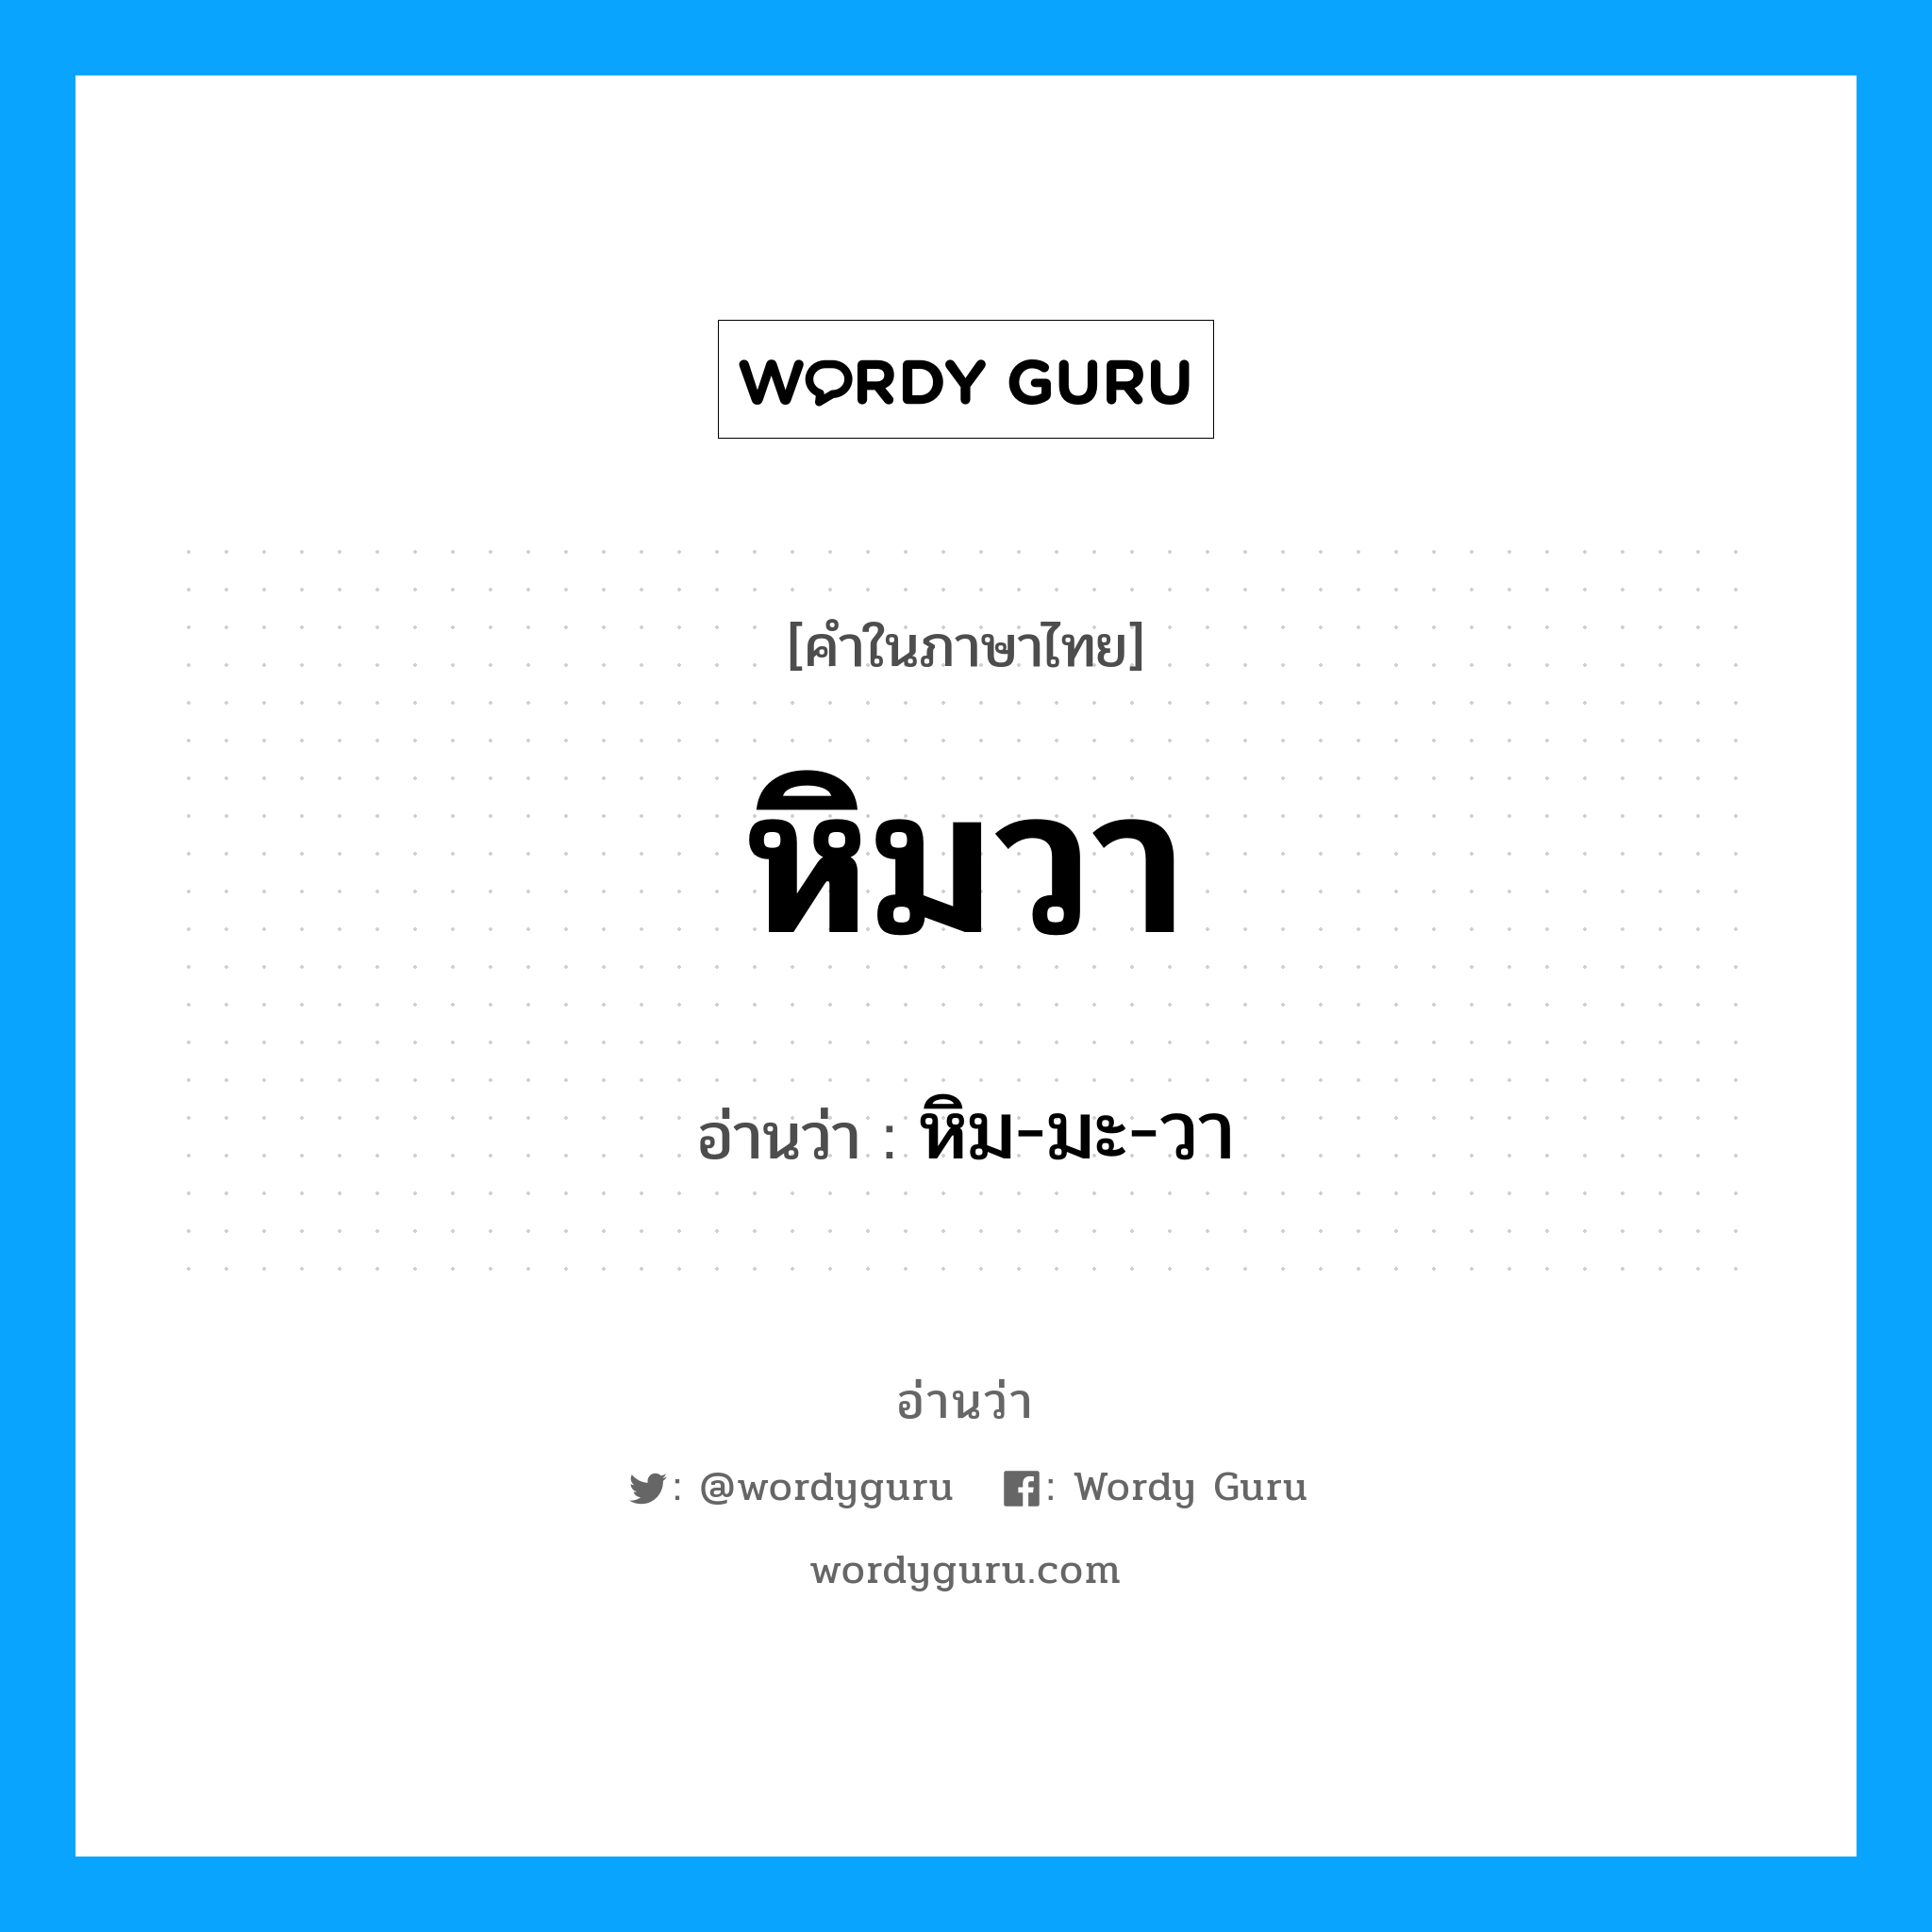 หิม-มะ-วา เป็นคำอ่านของคำไหน?, คำในภาษาไทย หิม-มะ-วา อ่านว่า หิมวา